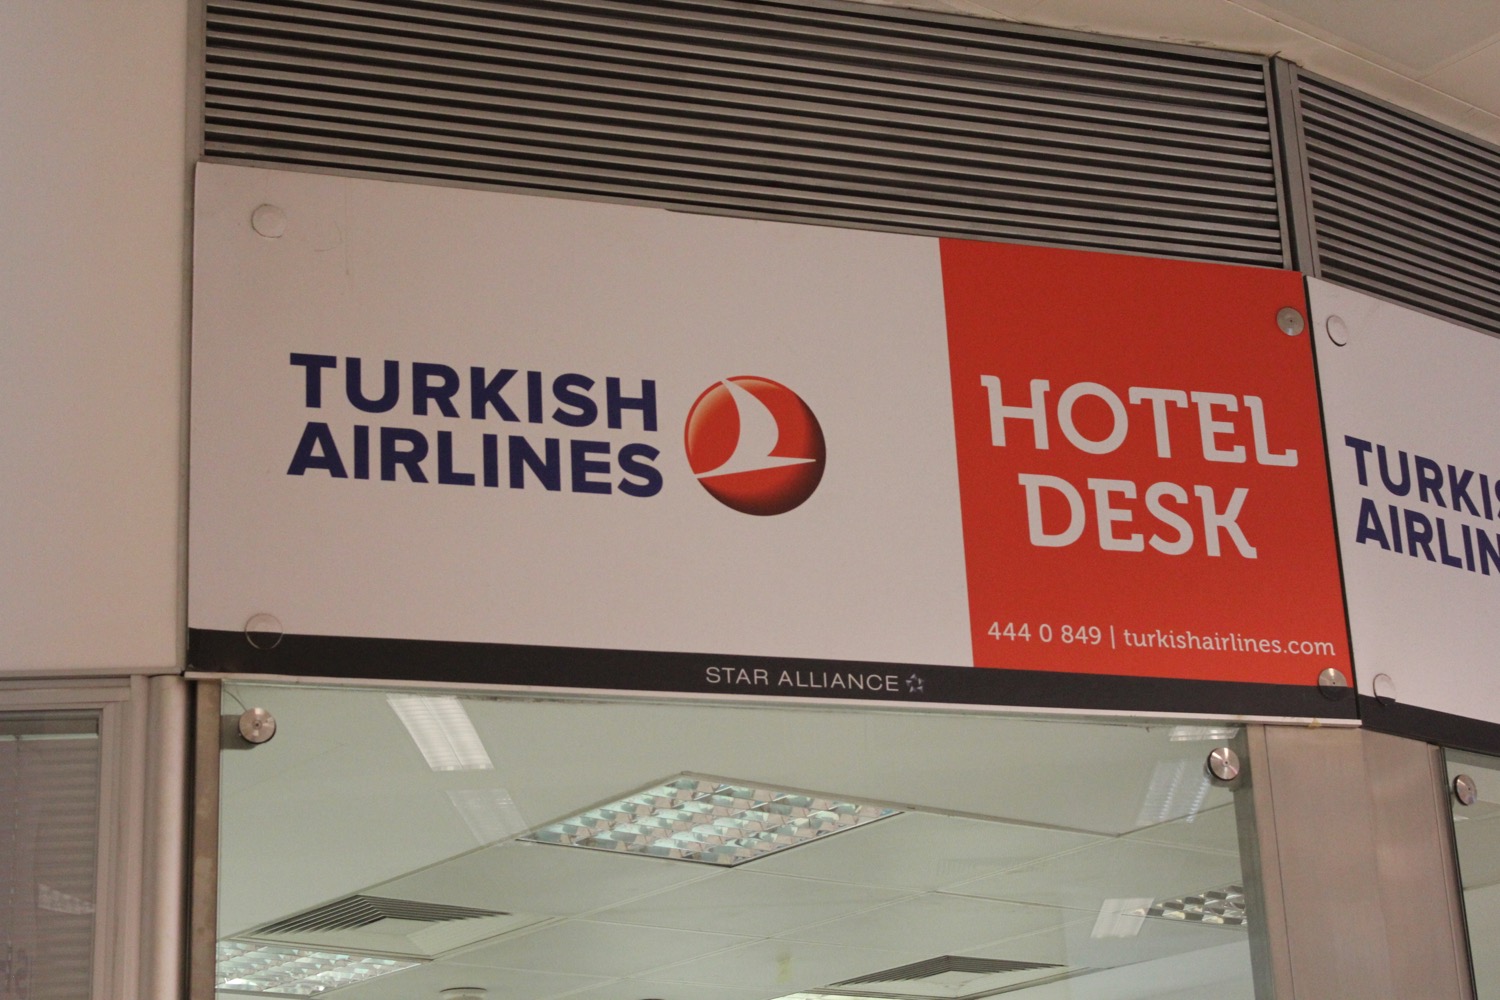 Turkish Airlines Hotel Desk - 2